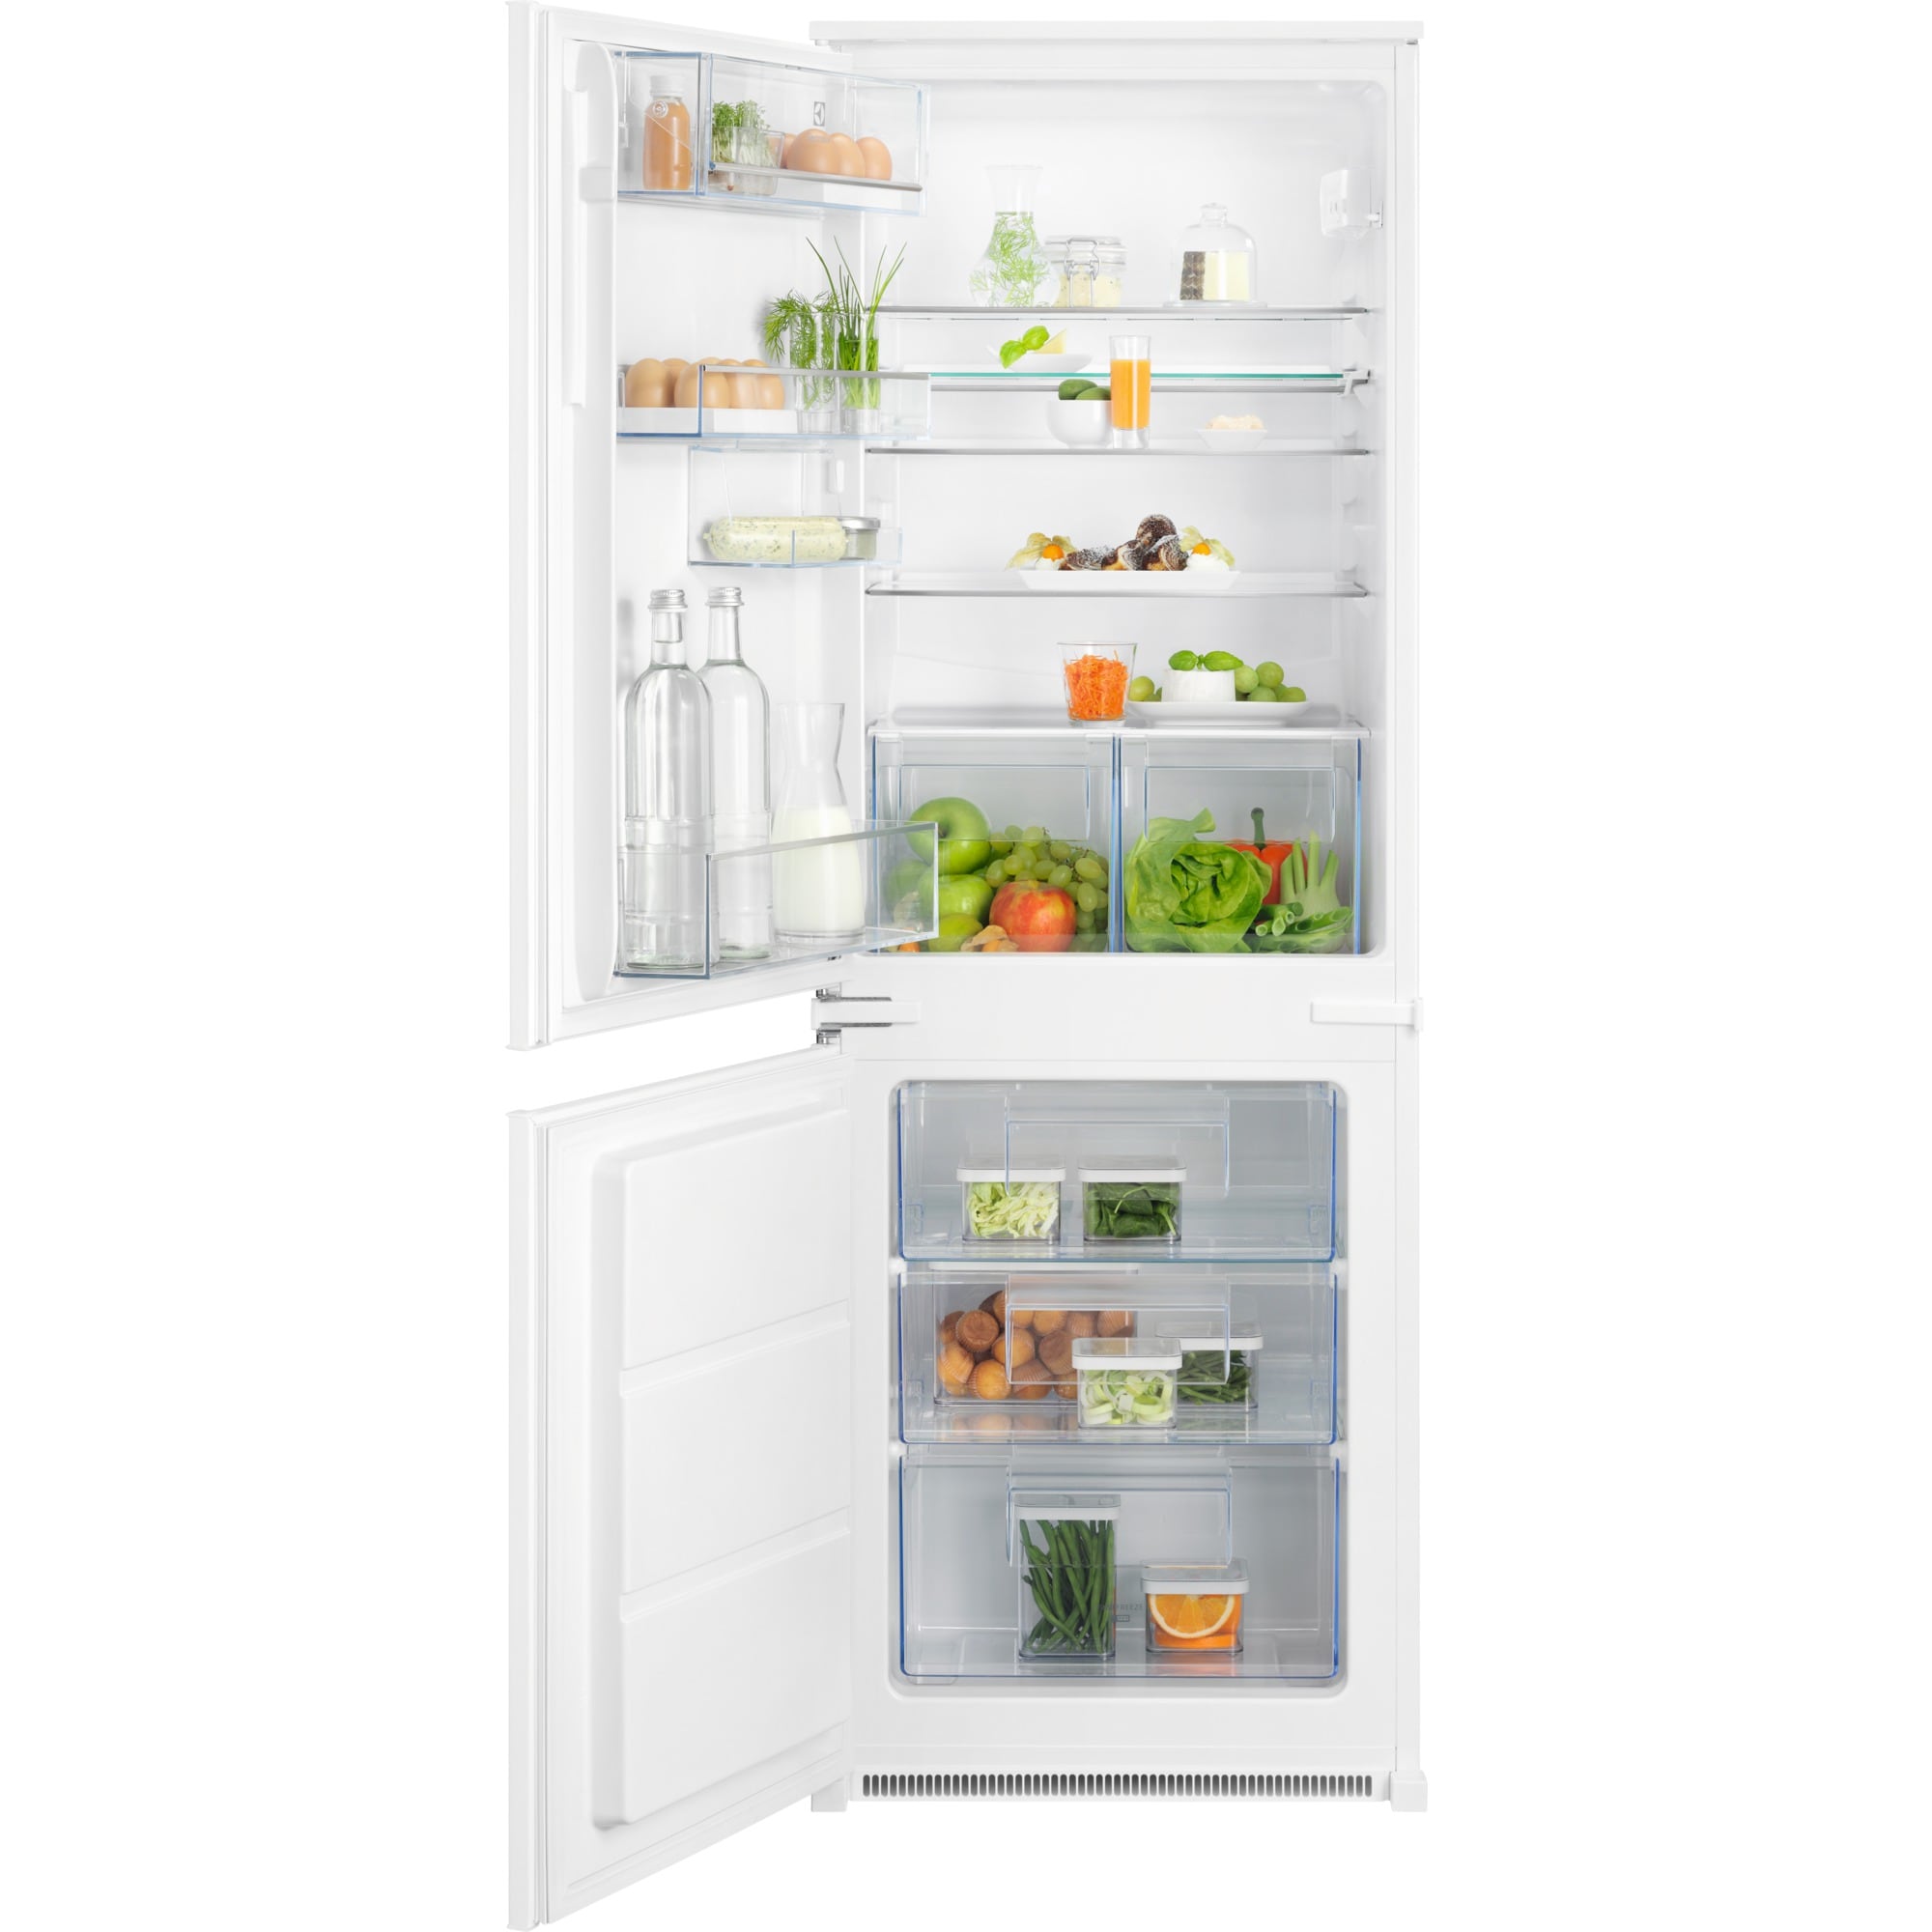 Electrolux Einbau-Kühlschrank ohne Gefrierfach, 176.9 cm, rechts, IK3035CZR, Rechts (wechselbar)